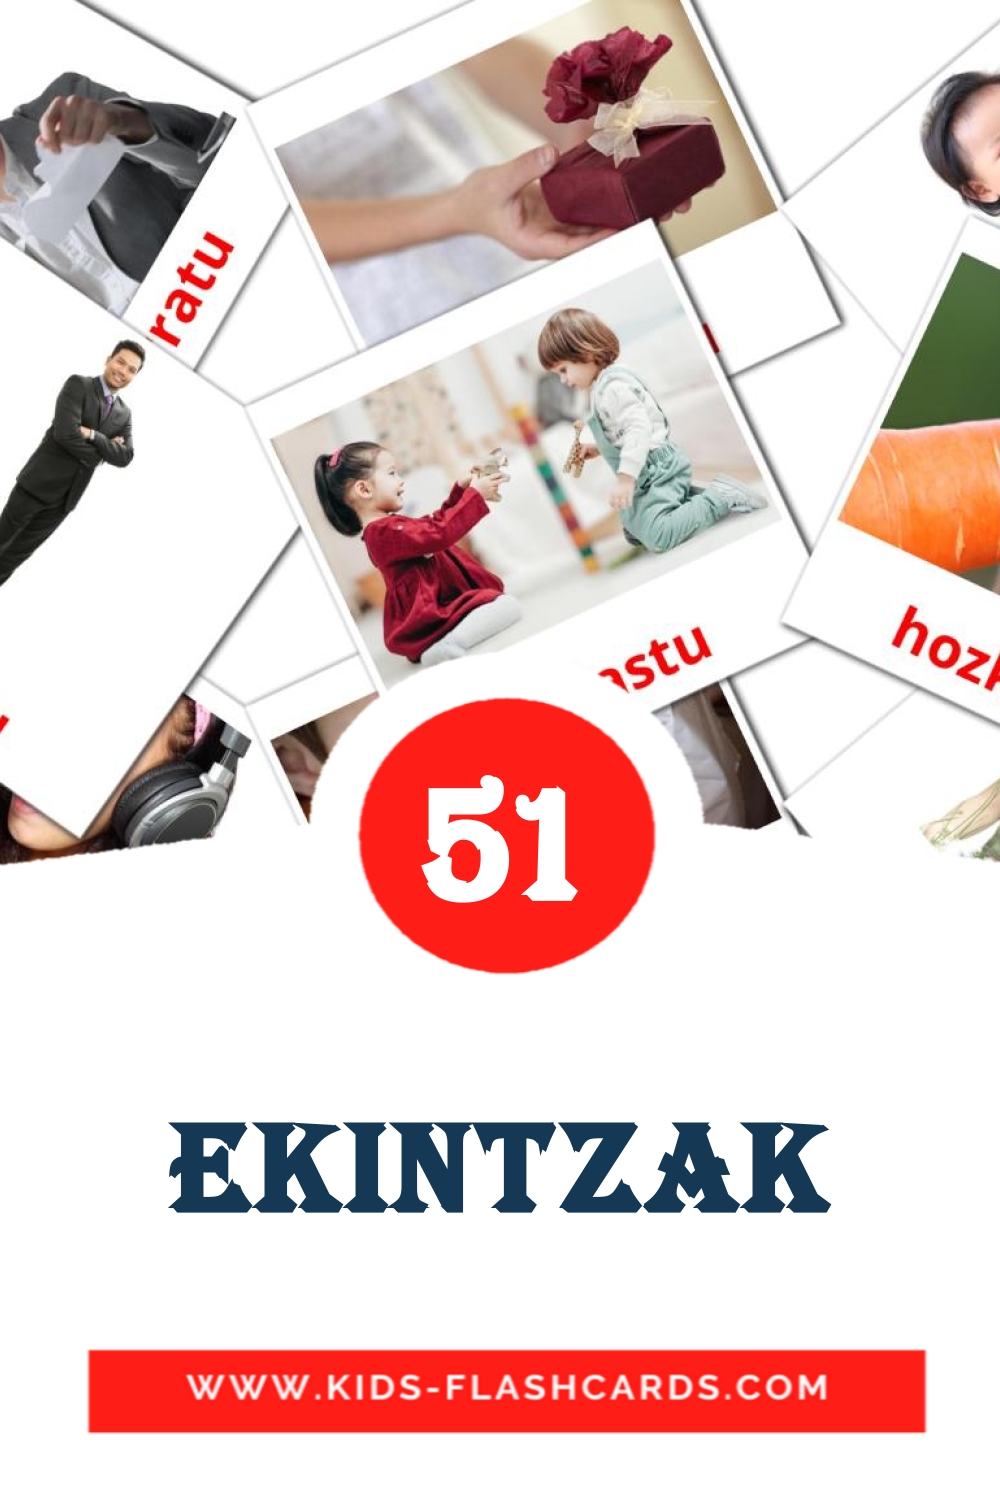 51 Ekintzak fotokaarten voor kleuters in het baskisch